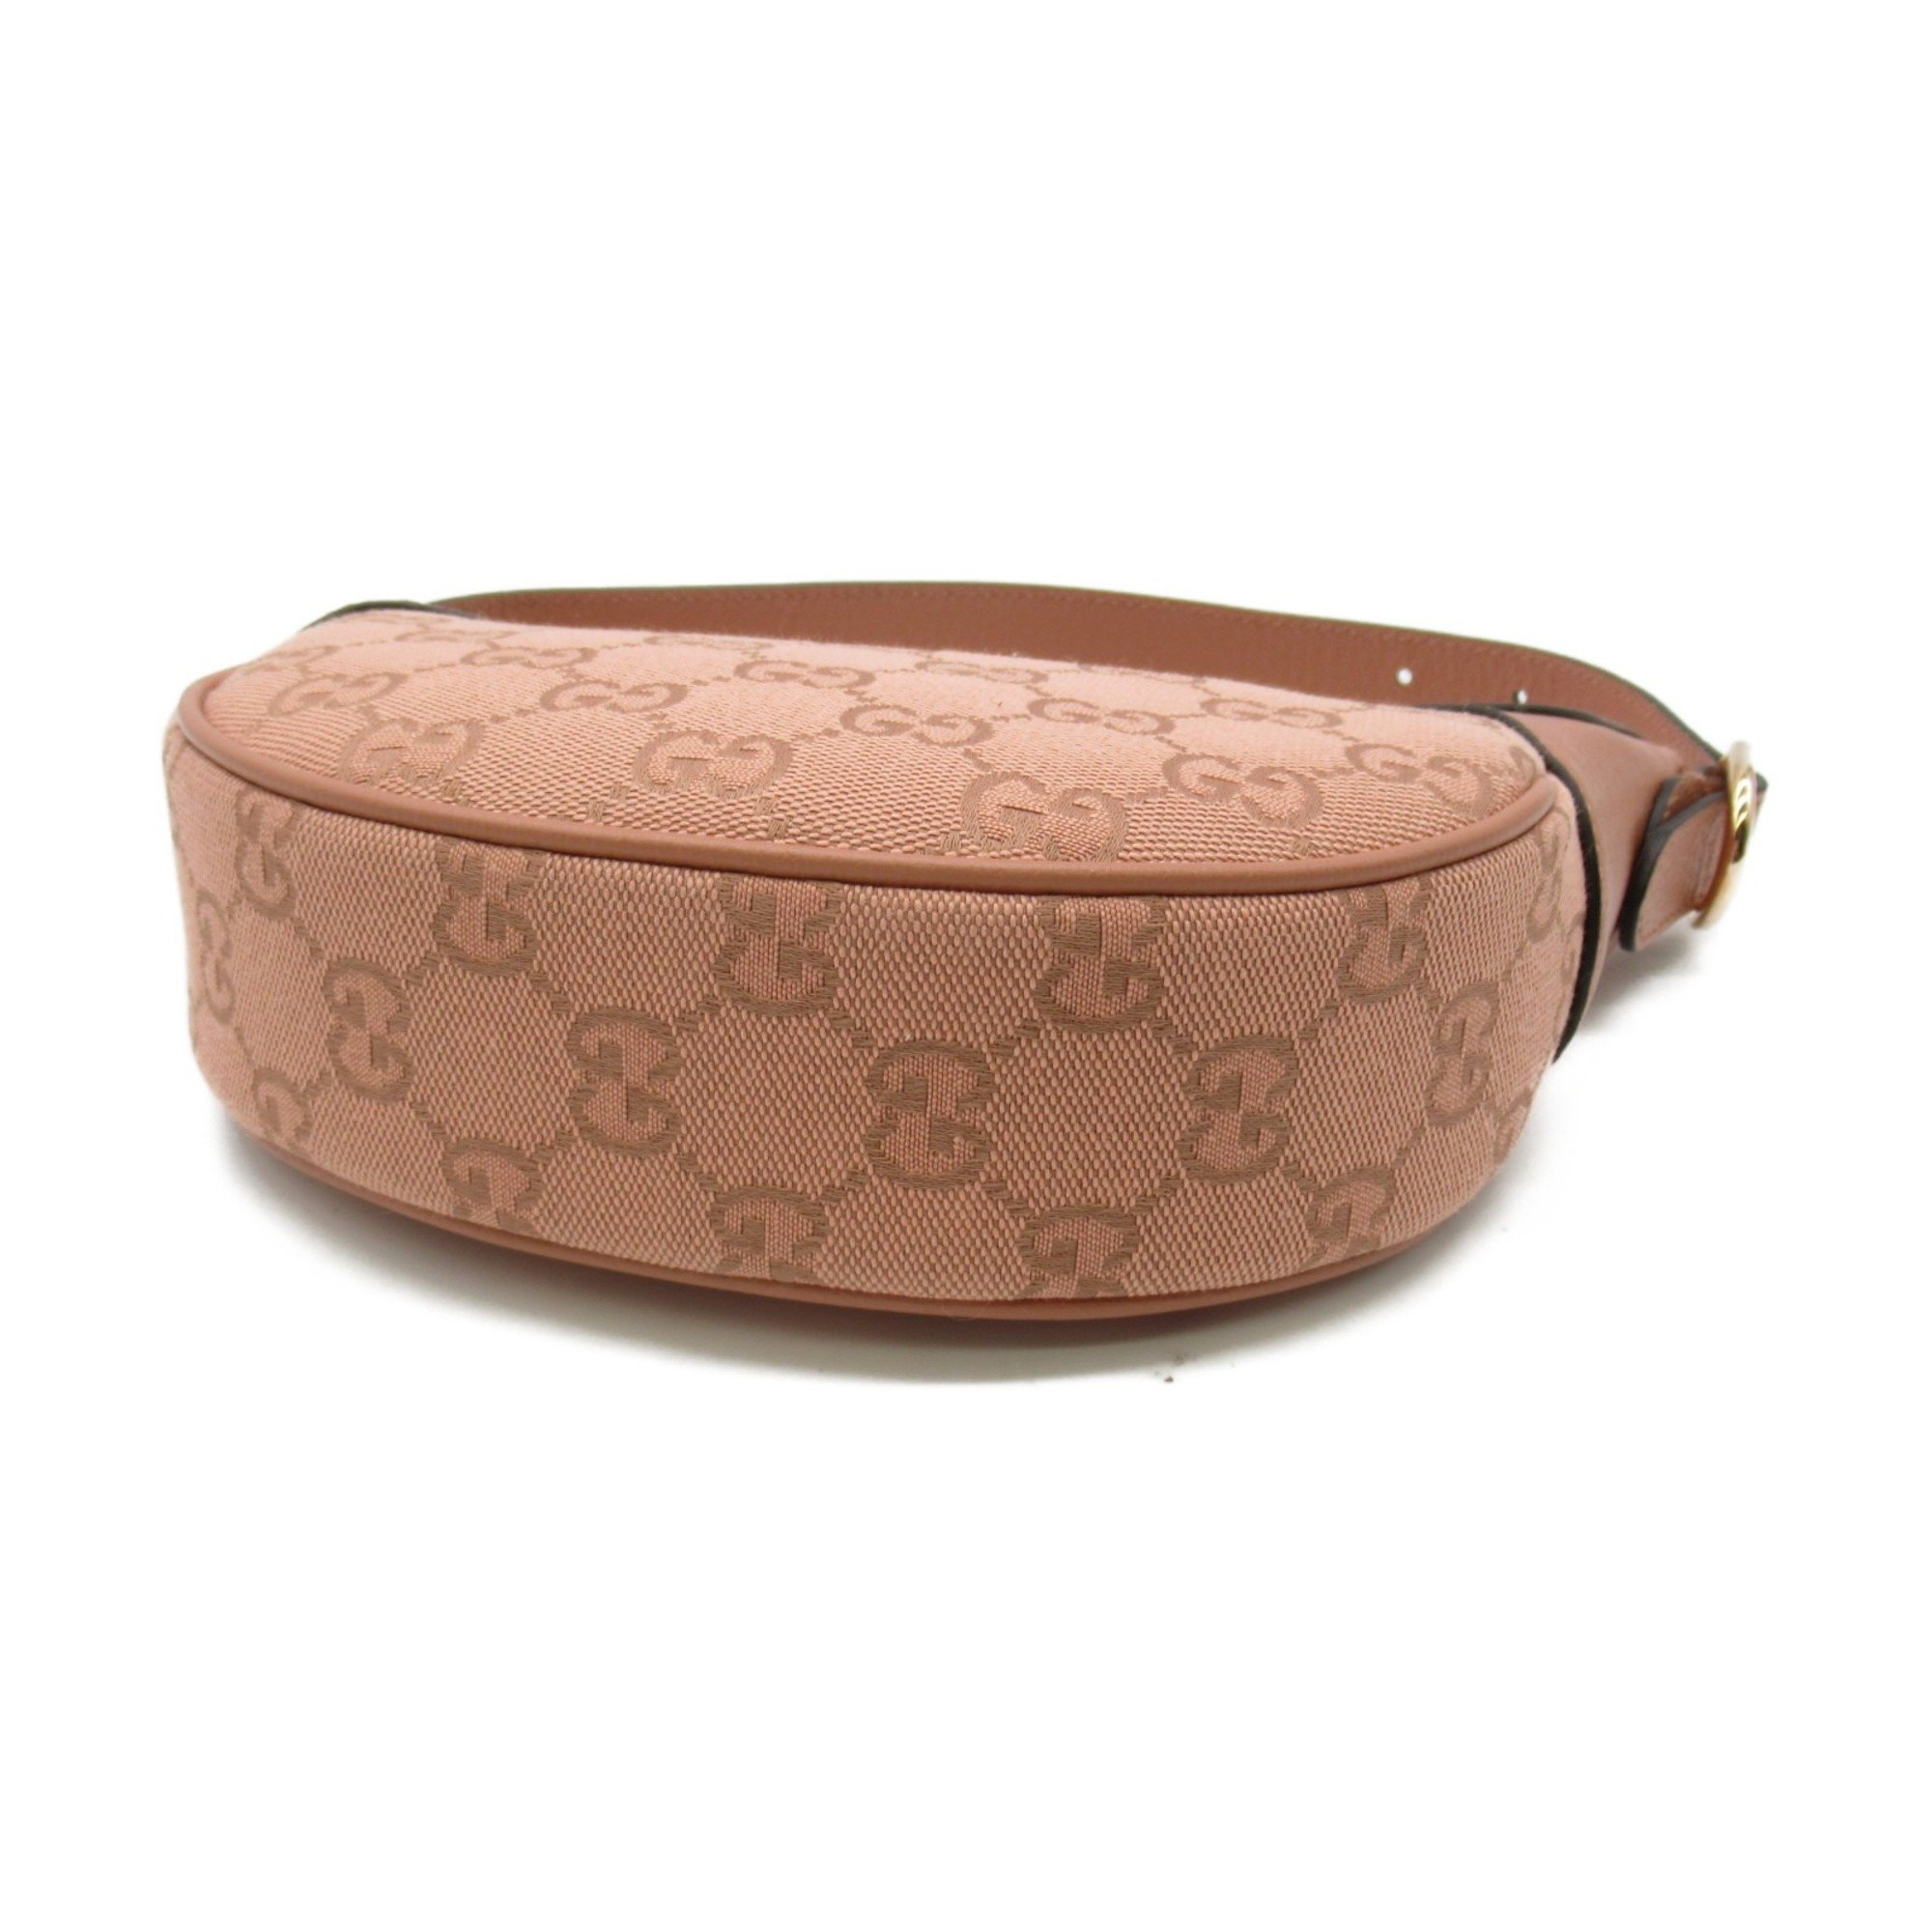 GUCCI Mini handbag Pink canvas 658551FACC75748